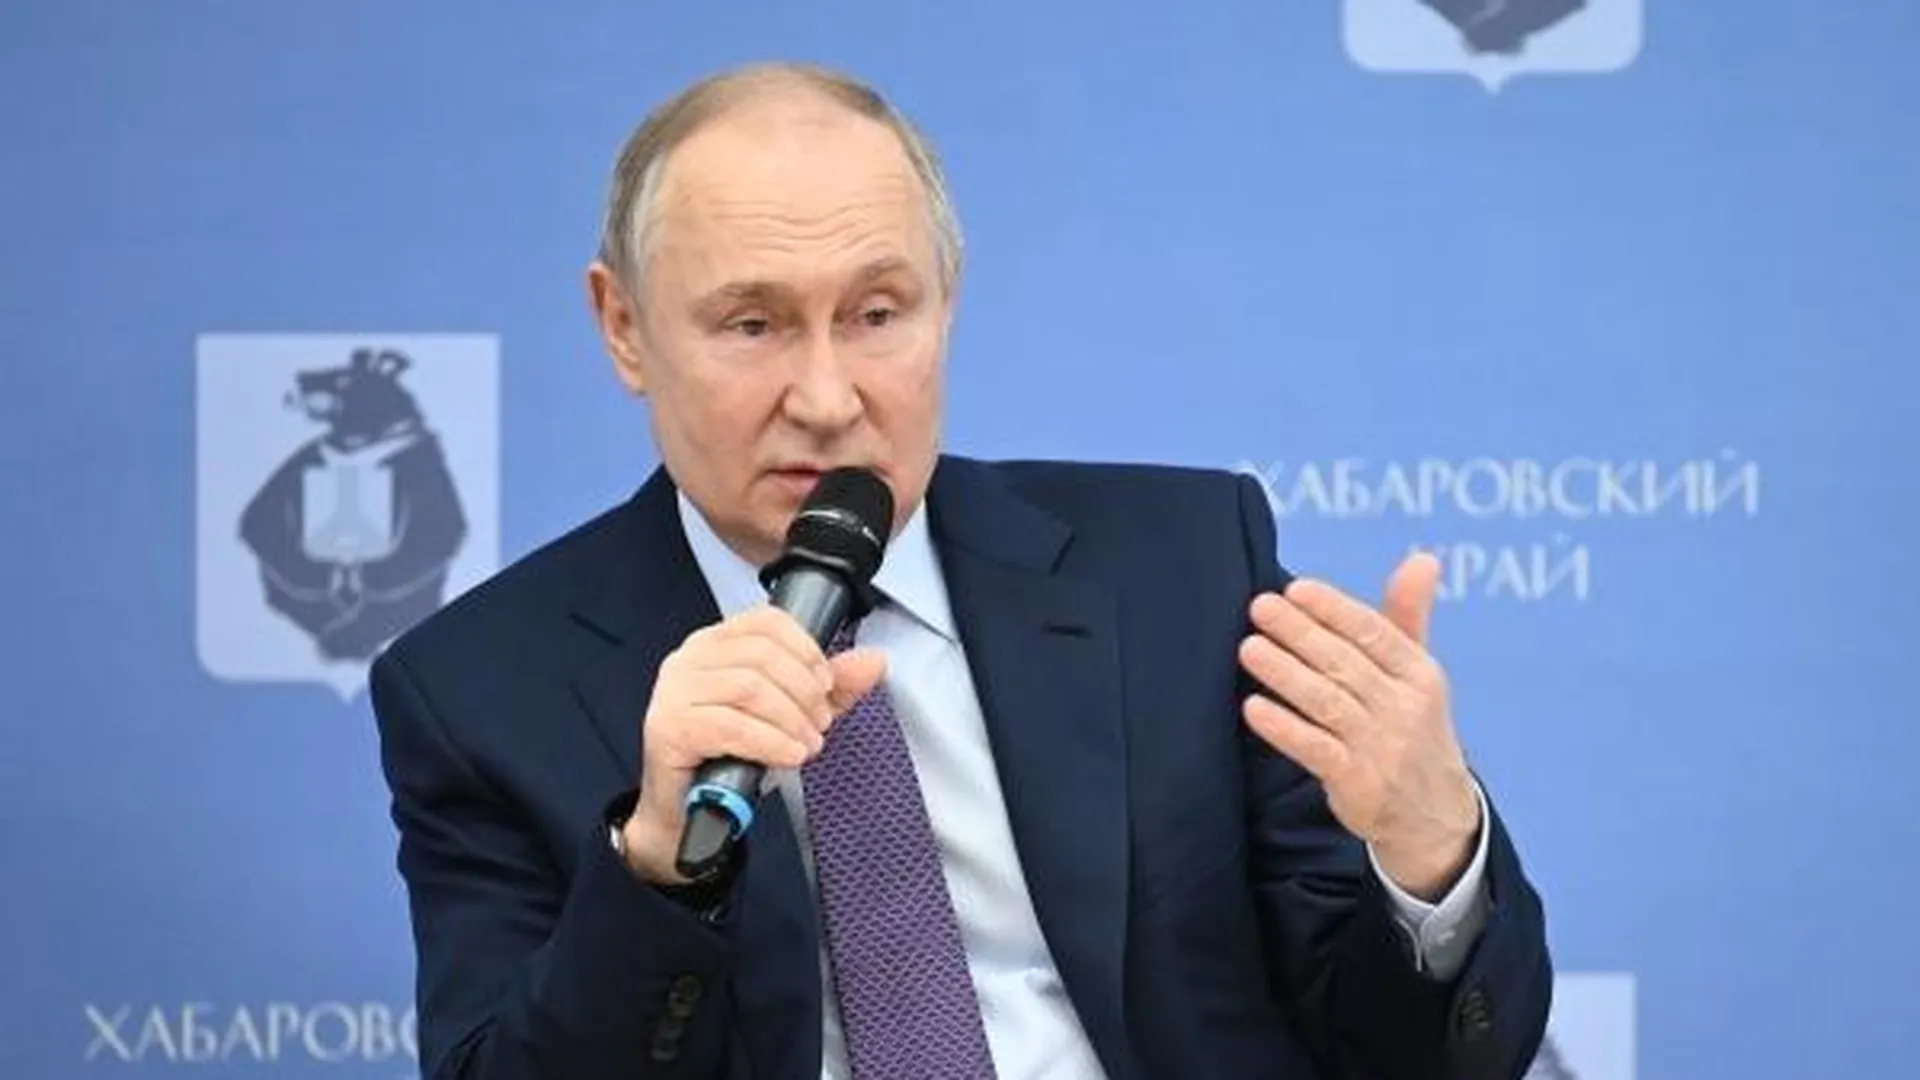 Путин обсудит с главой Хабаровского края экспорт российских стройматериалов в Китай